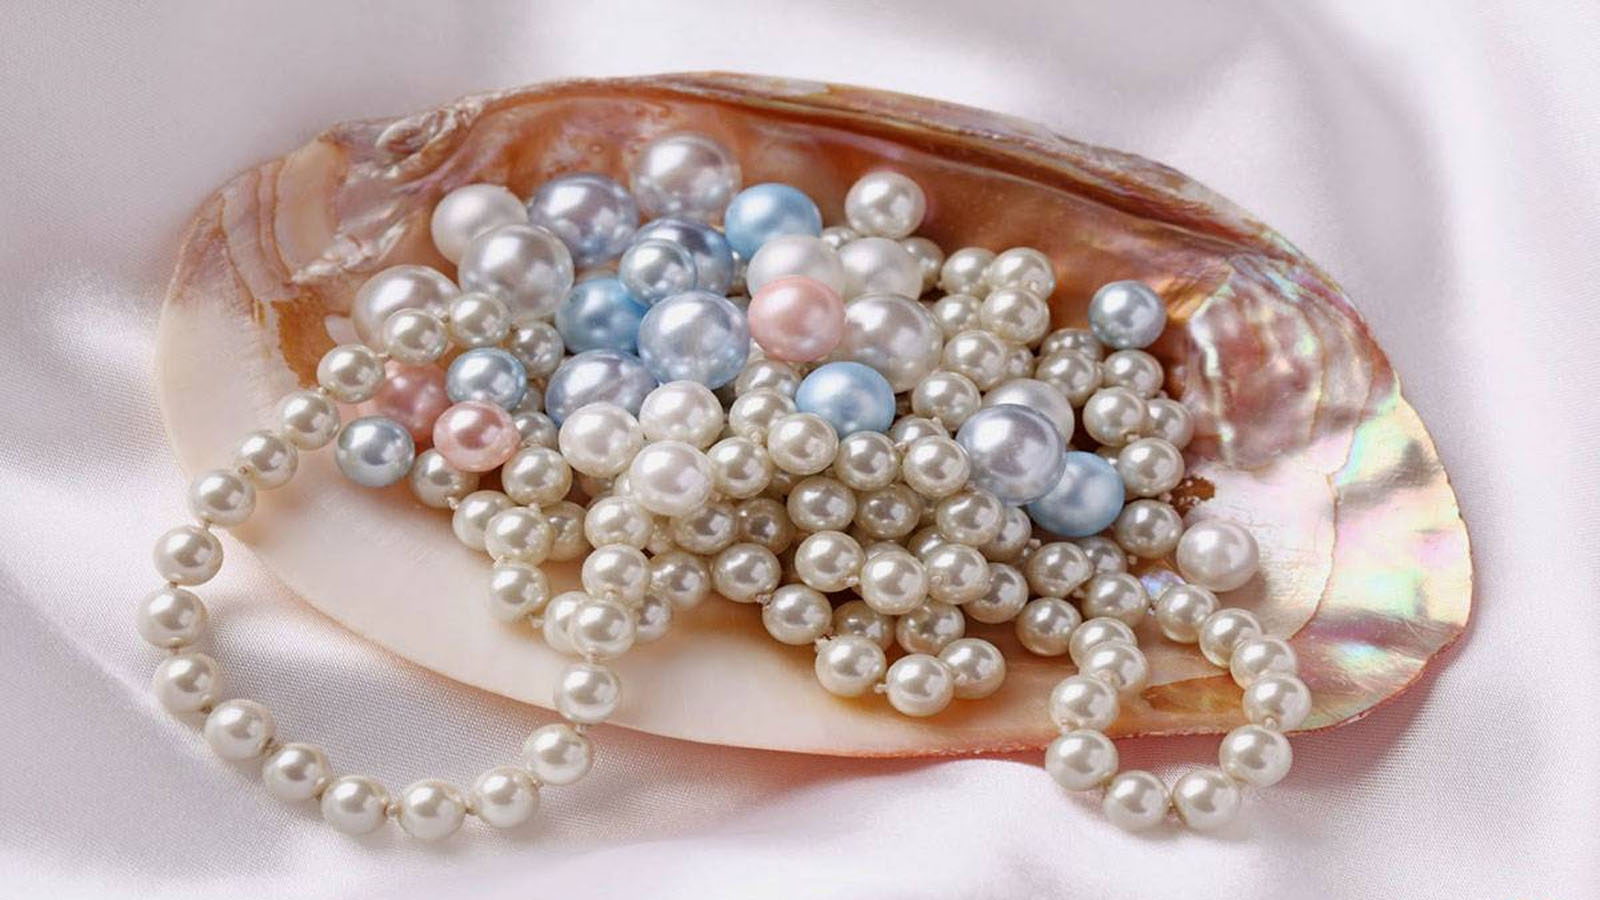 Ngọc trai Phú Quốc được đánh giá cao về chất lượng ở trong nước lẫn quốc tế